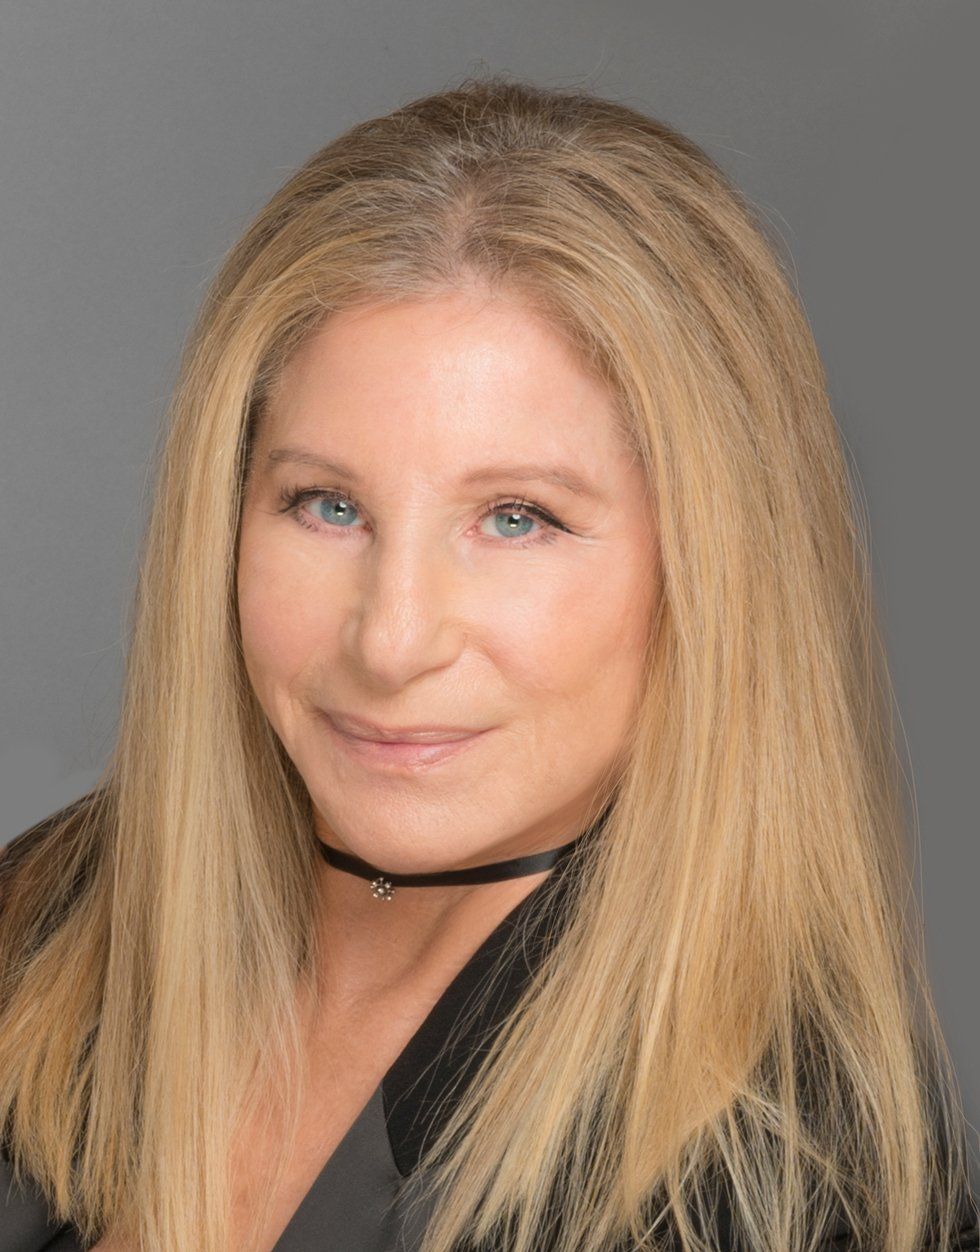 2021 photo of Barbra Streisand by Firooz Zahedi.